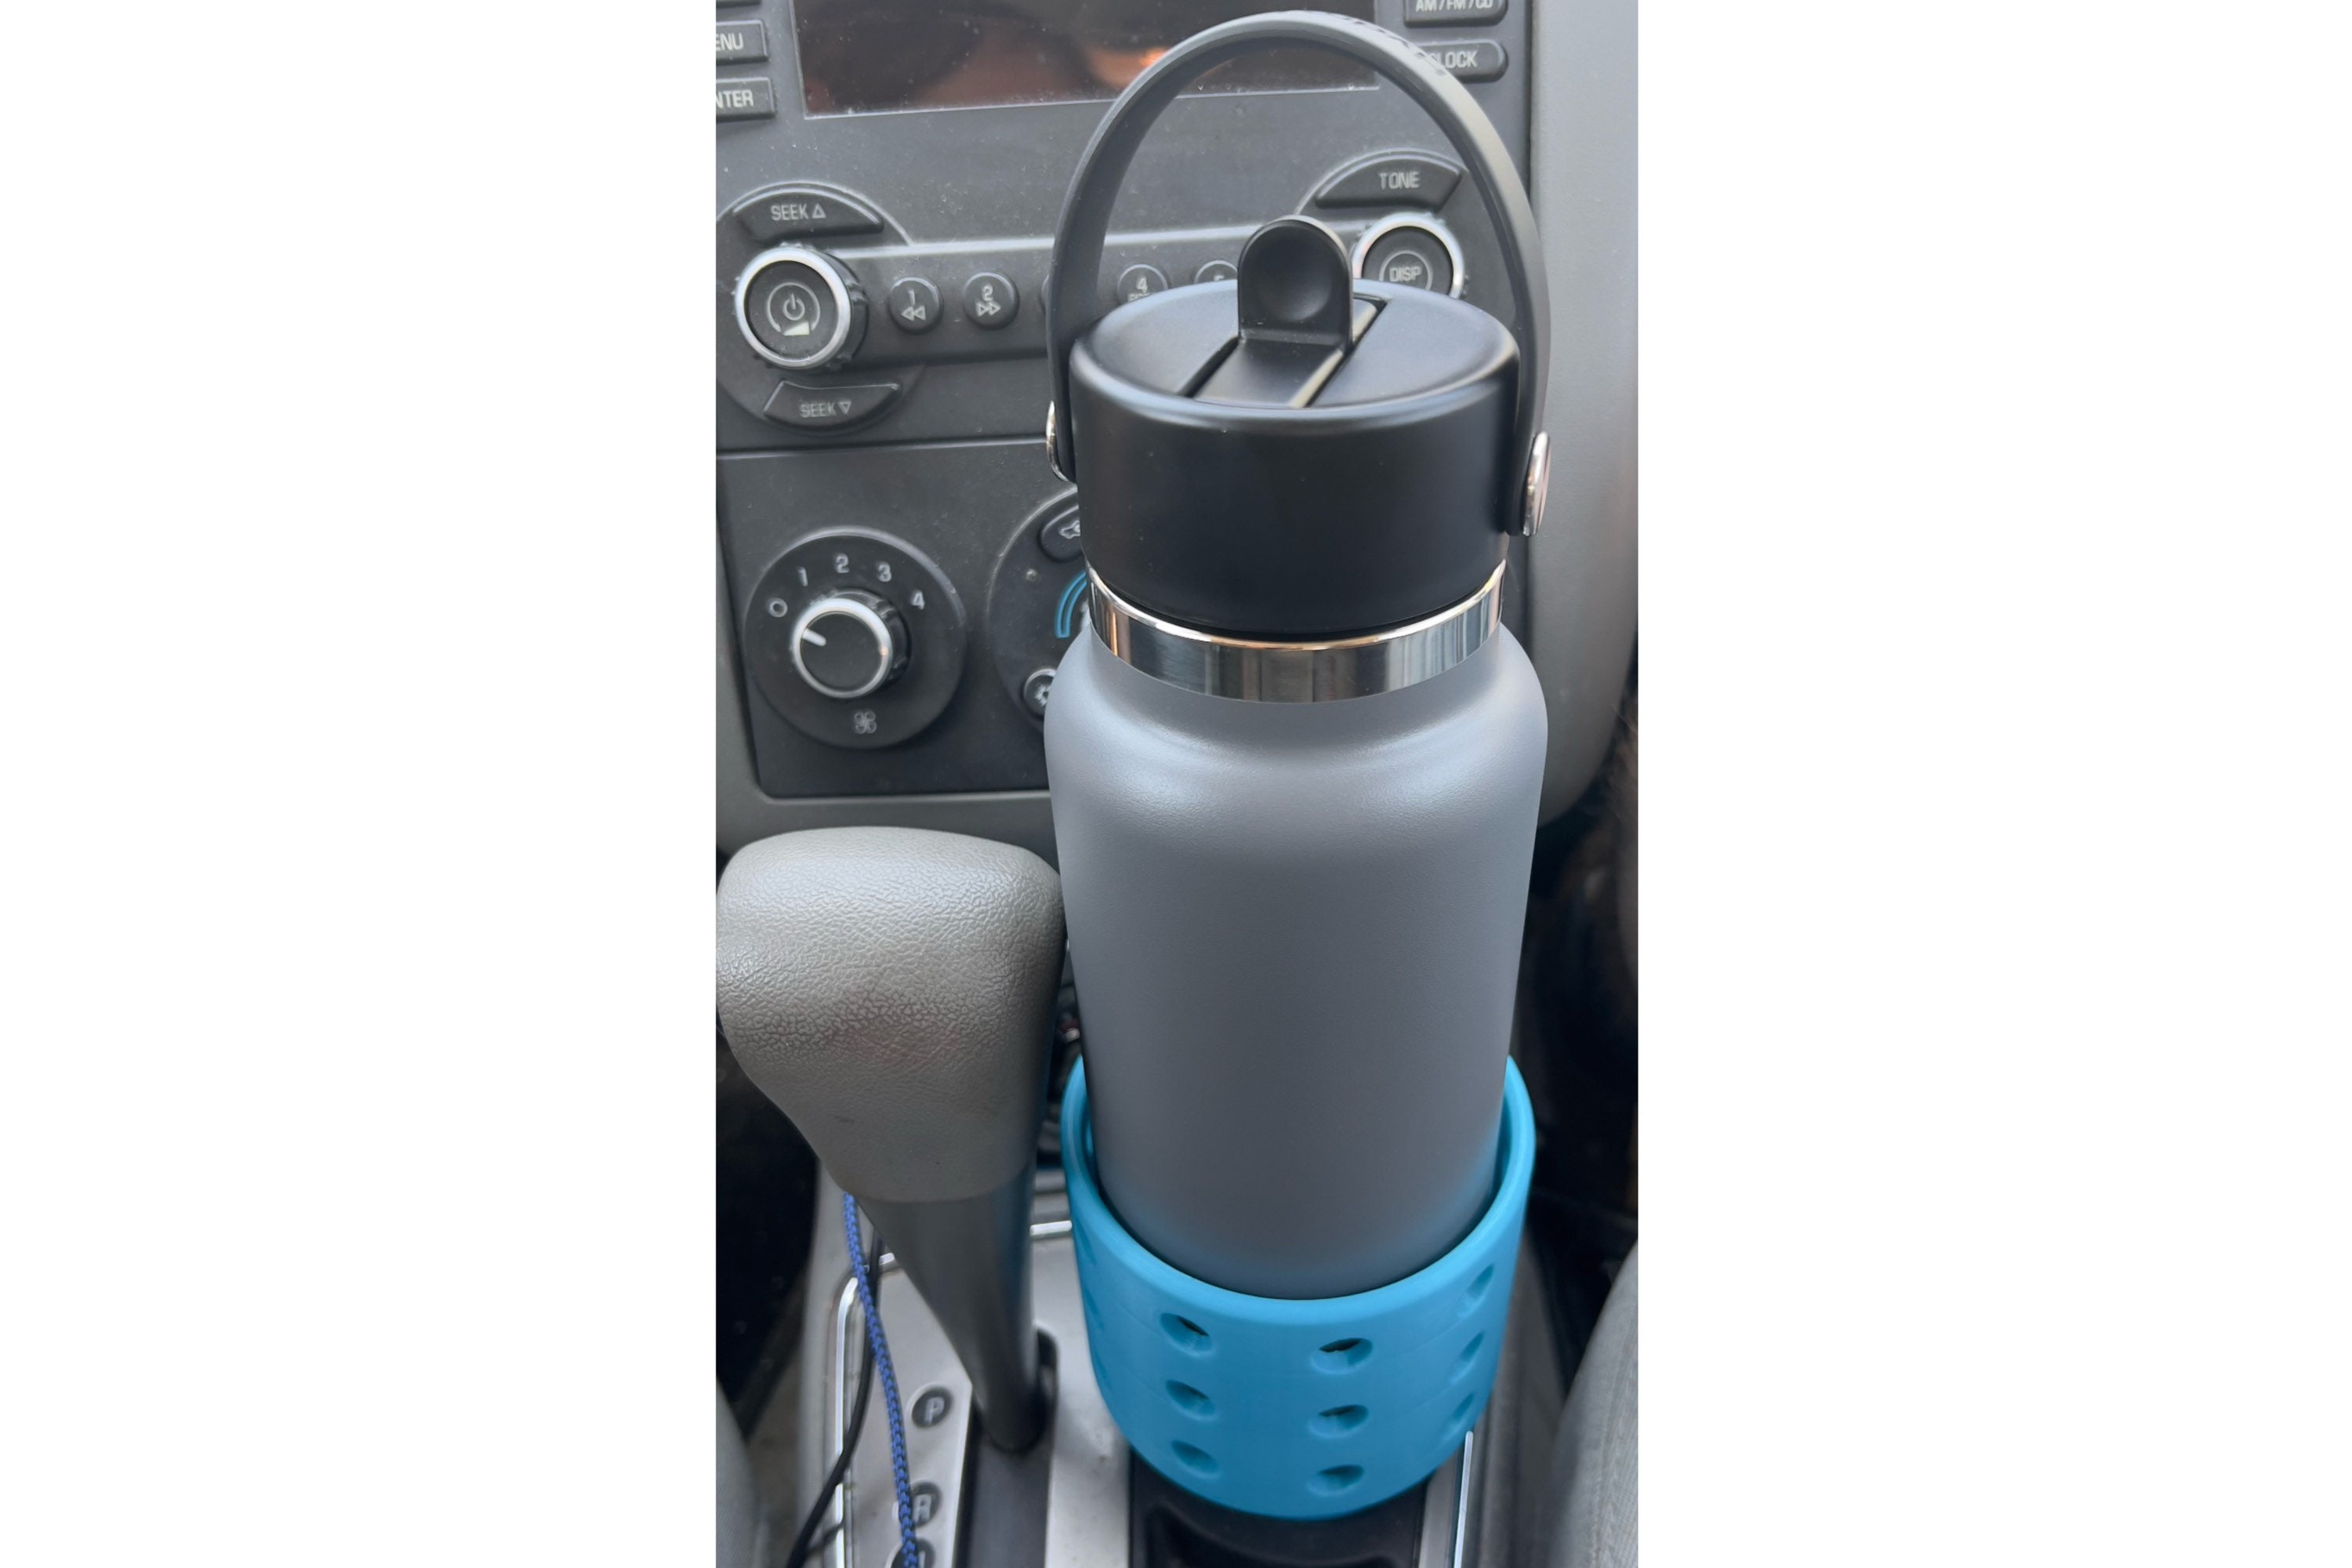 Hydro flask adapter - .de